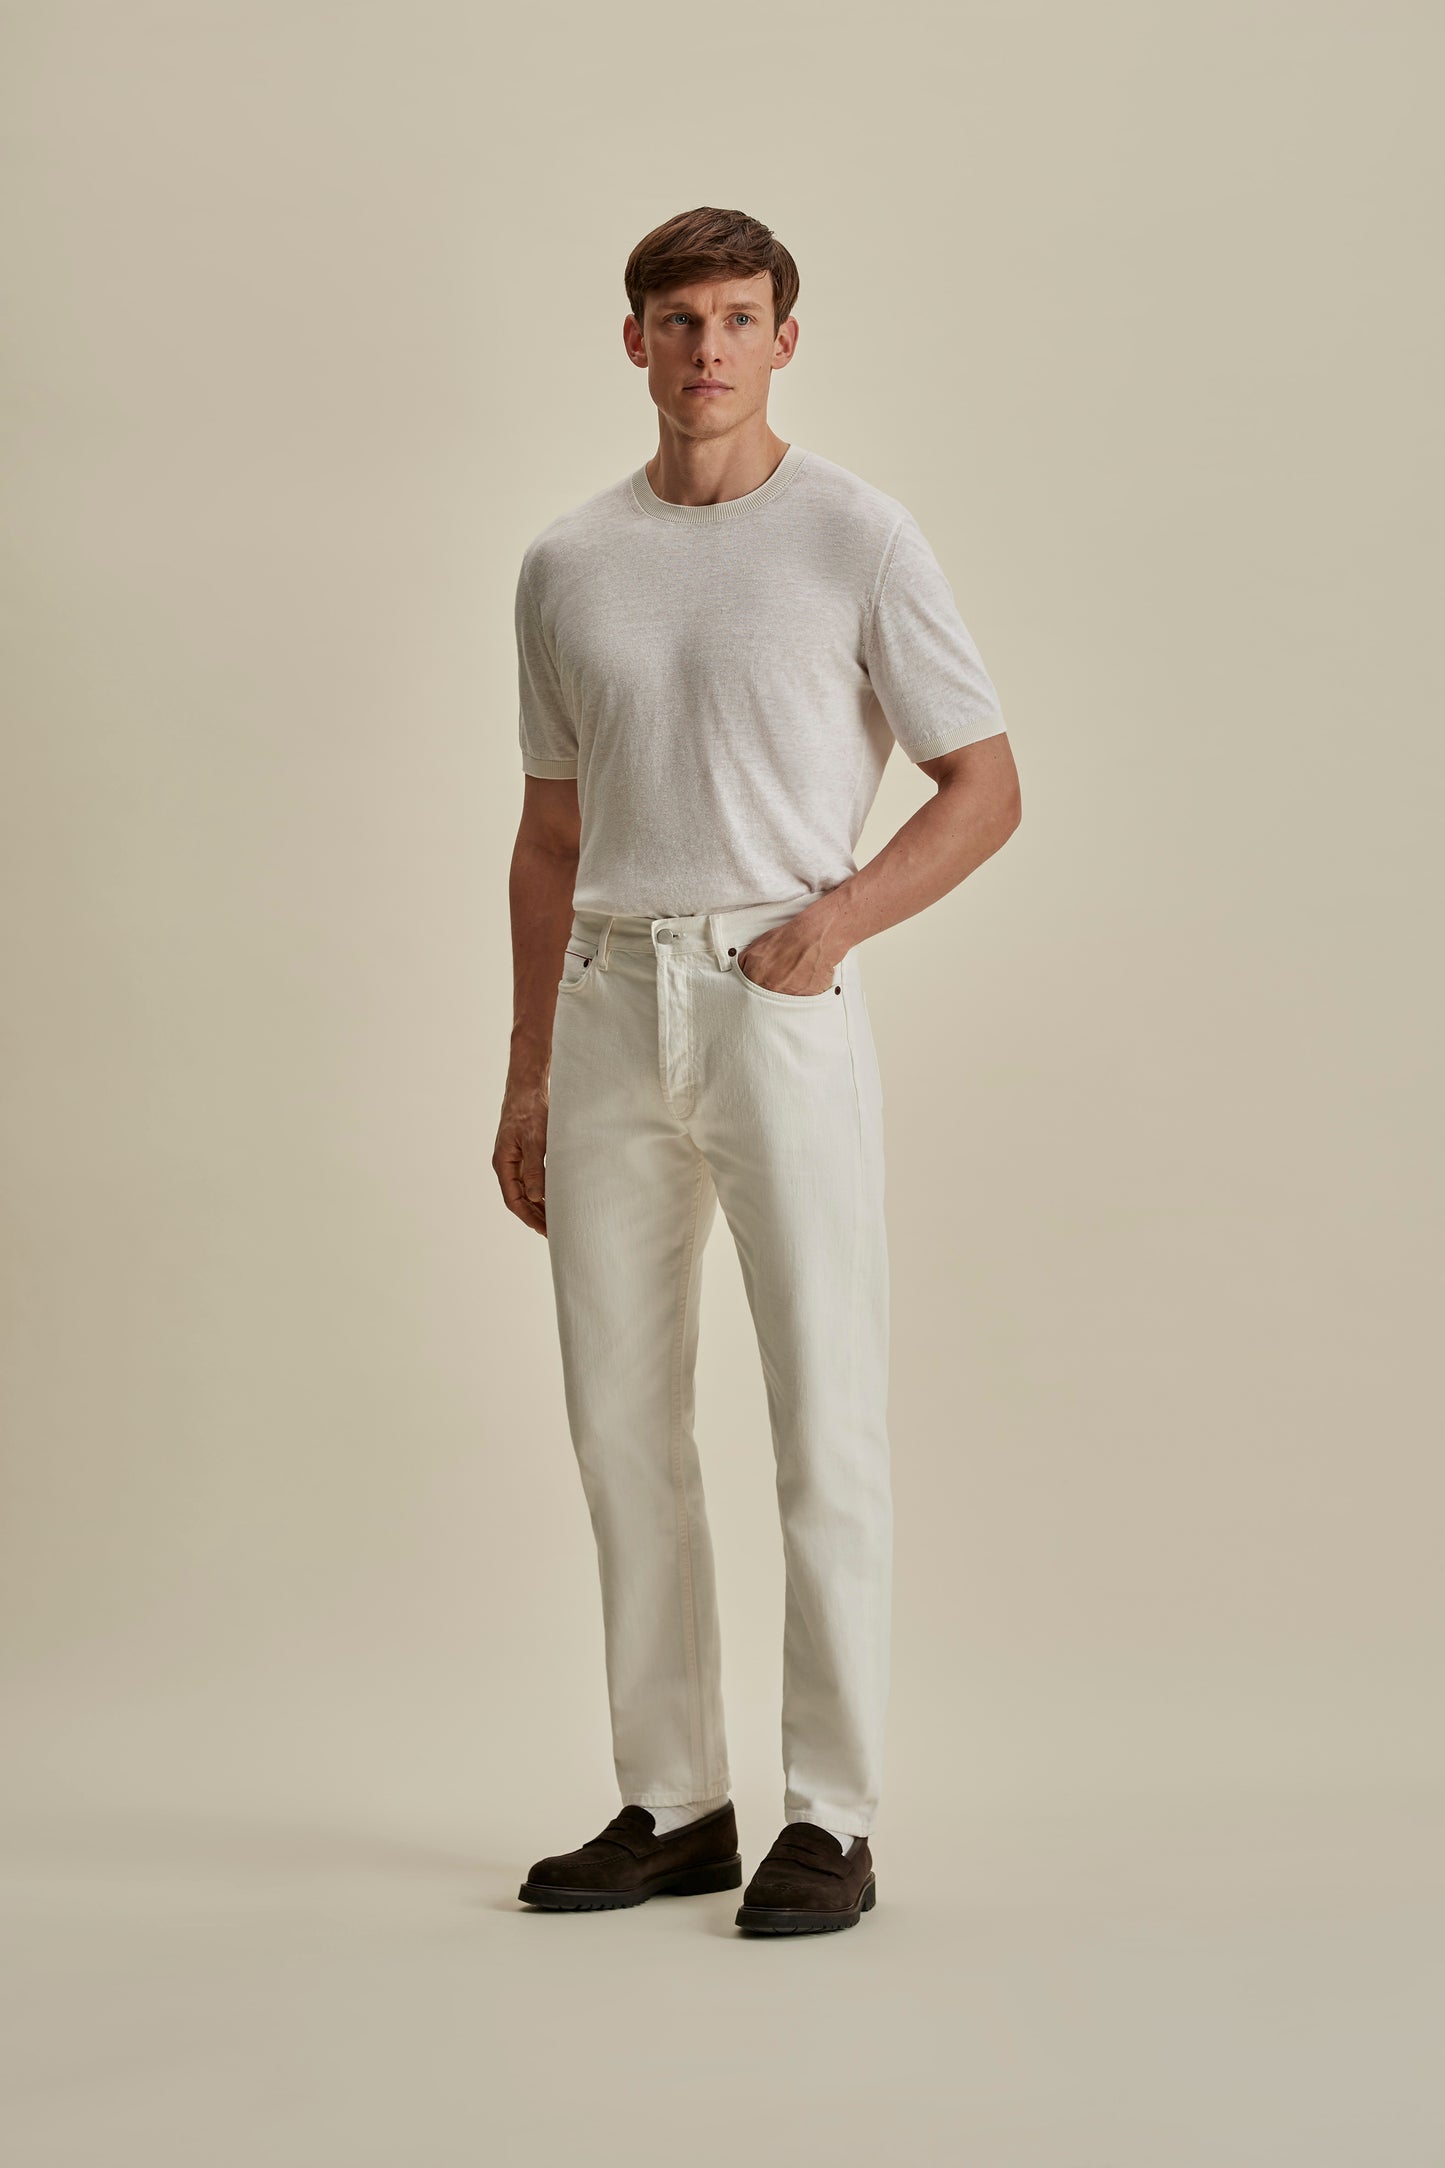 Denim Easy Fit Jeans White Full Length Model Image